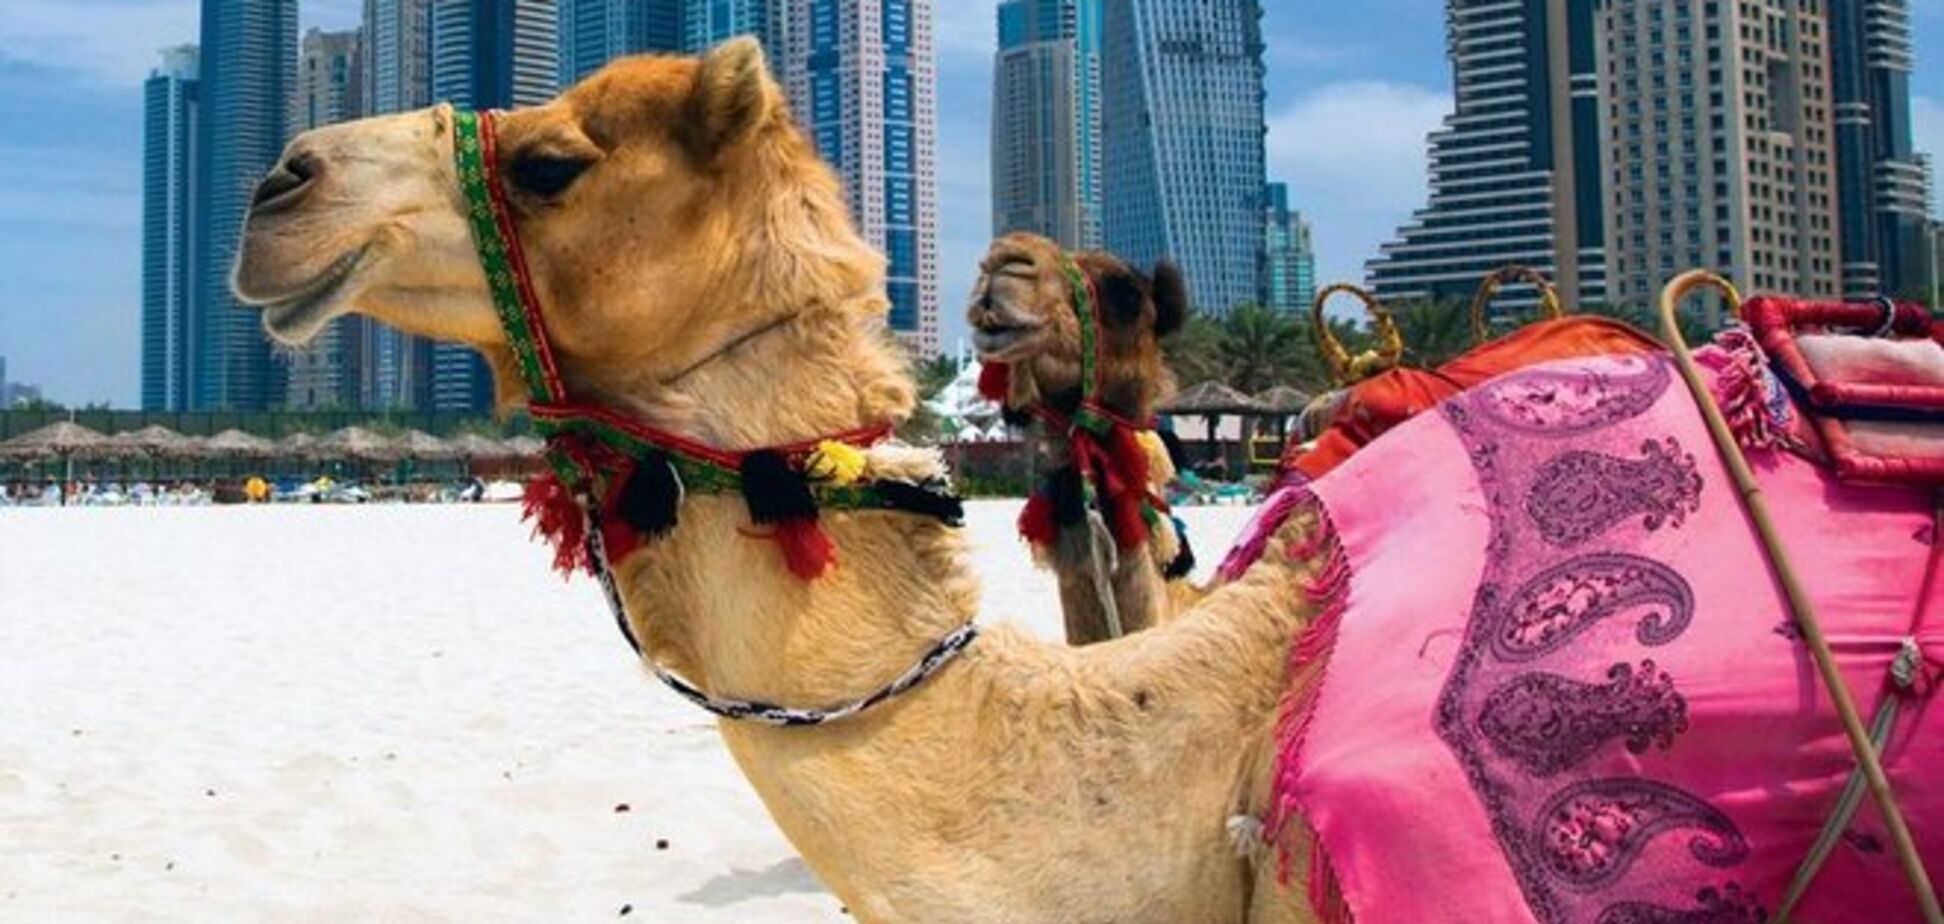 Туристу на заметку: как вести себя в арабских странах